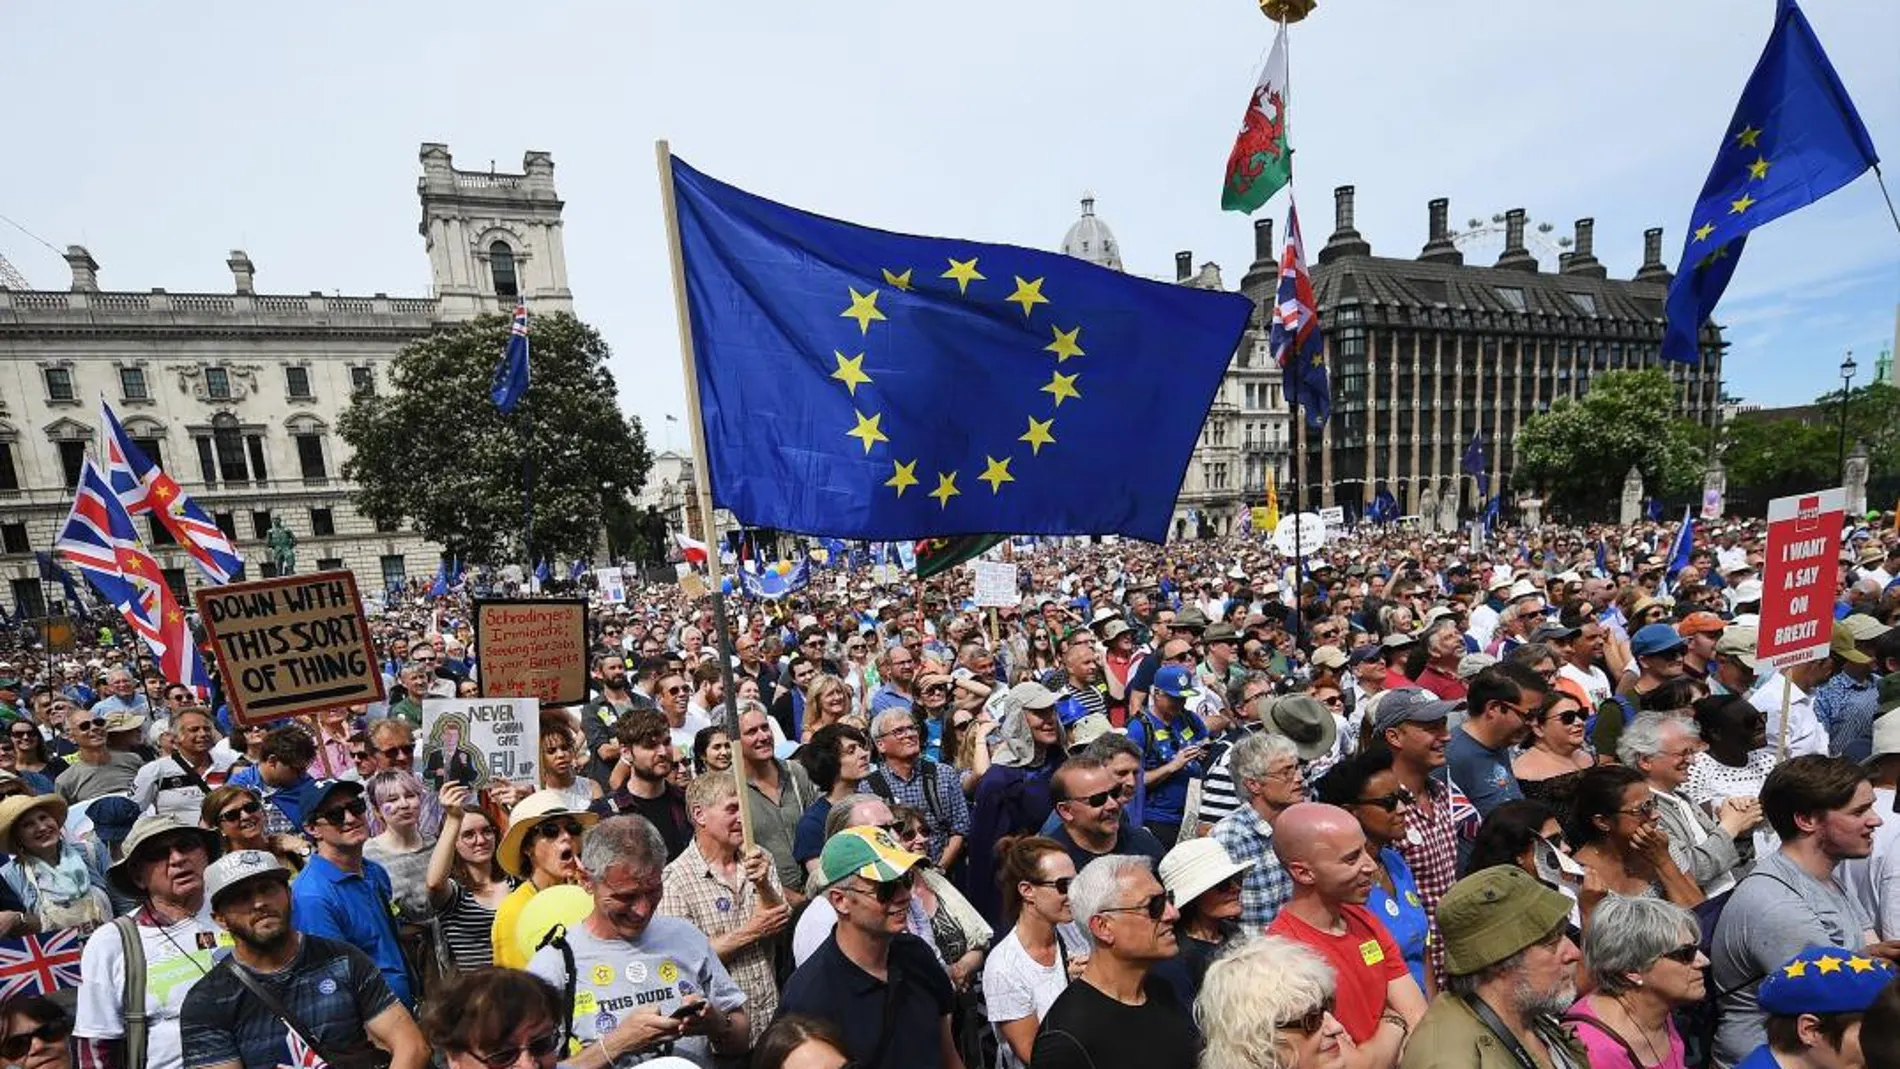 Imagen de la manifestación hoy, 23 de junio, en Londres en contra del Brexit. Efe